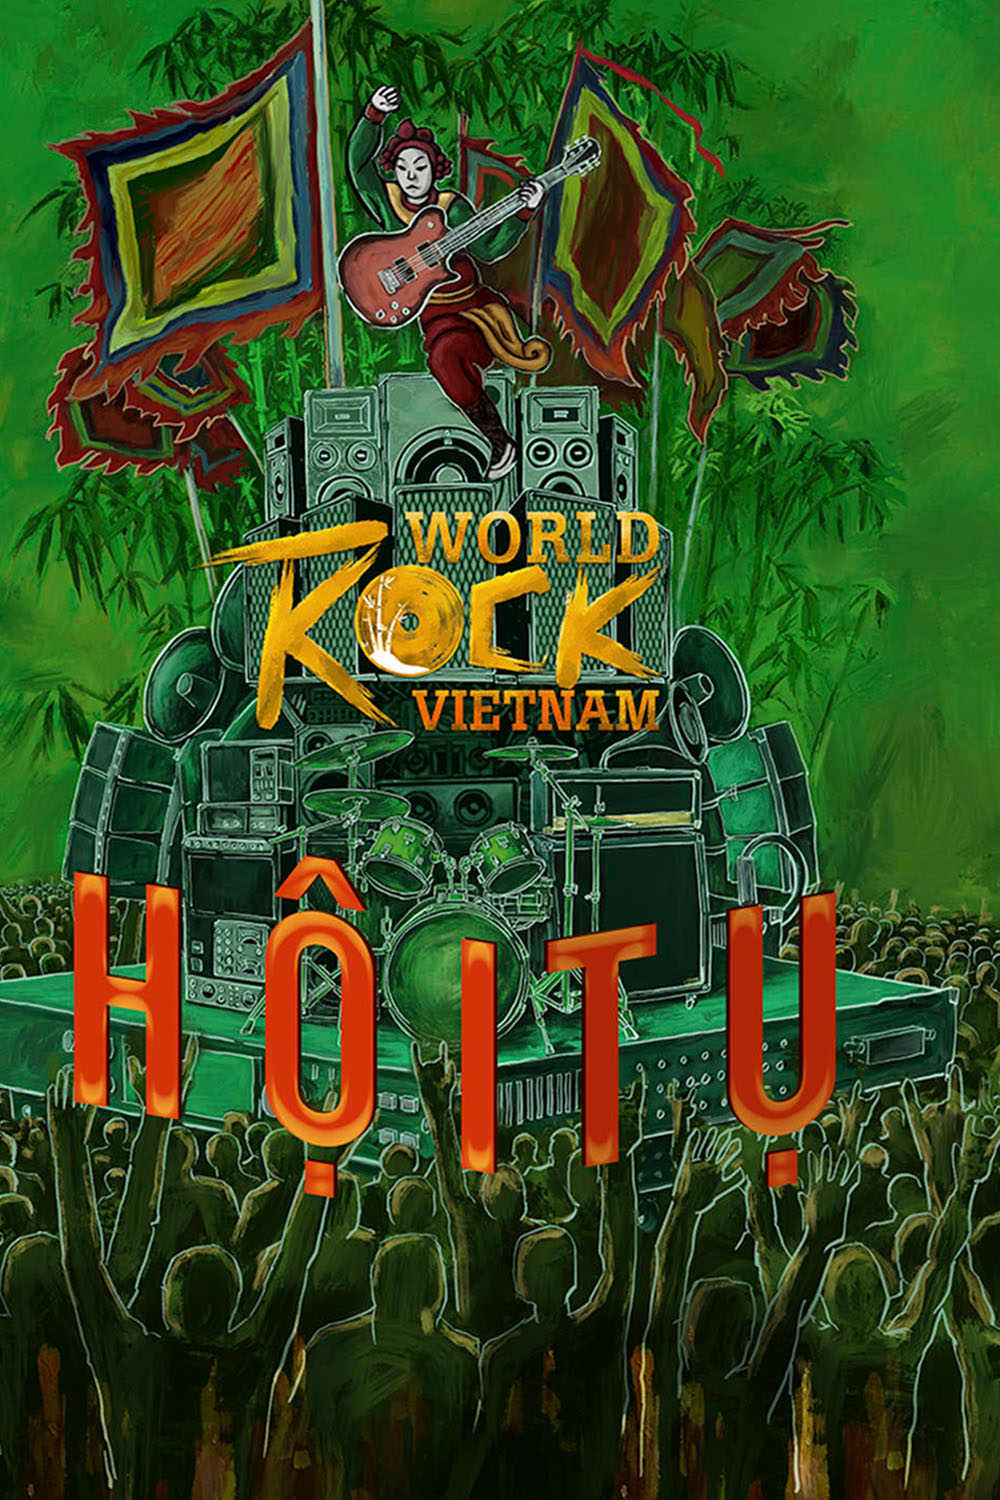 Harpers Bazaar world rock Vietnam 03 - Lễ hội nhạc Rock quốc tế tại TP. HCM chính thức khởi động